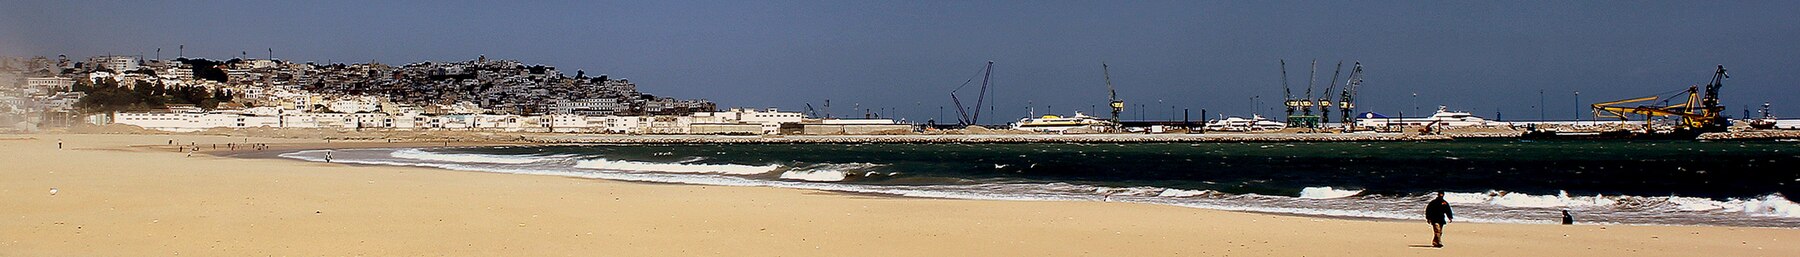 Tangier banner Beachfront.jpg